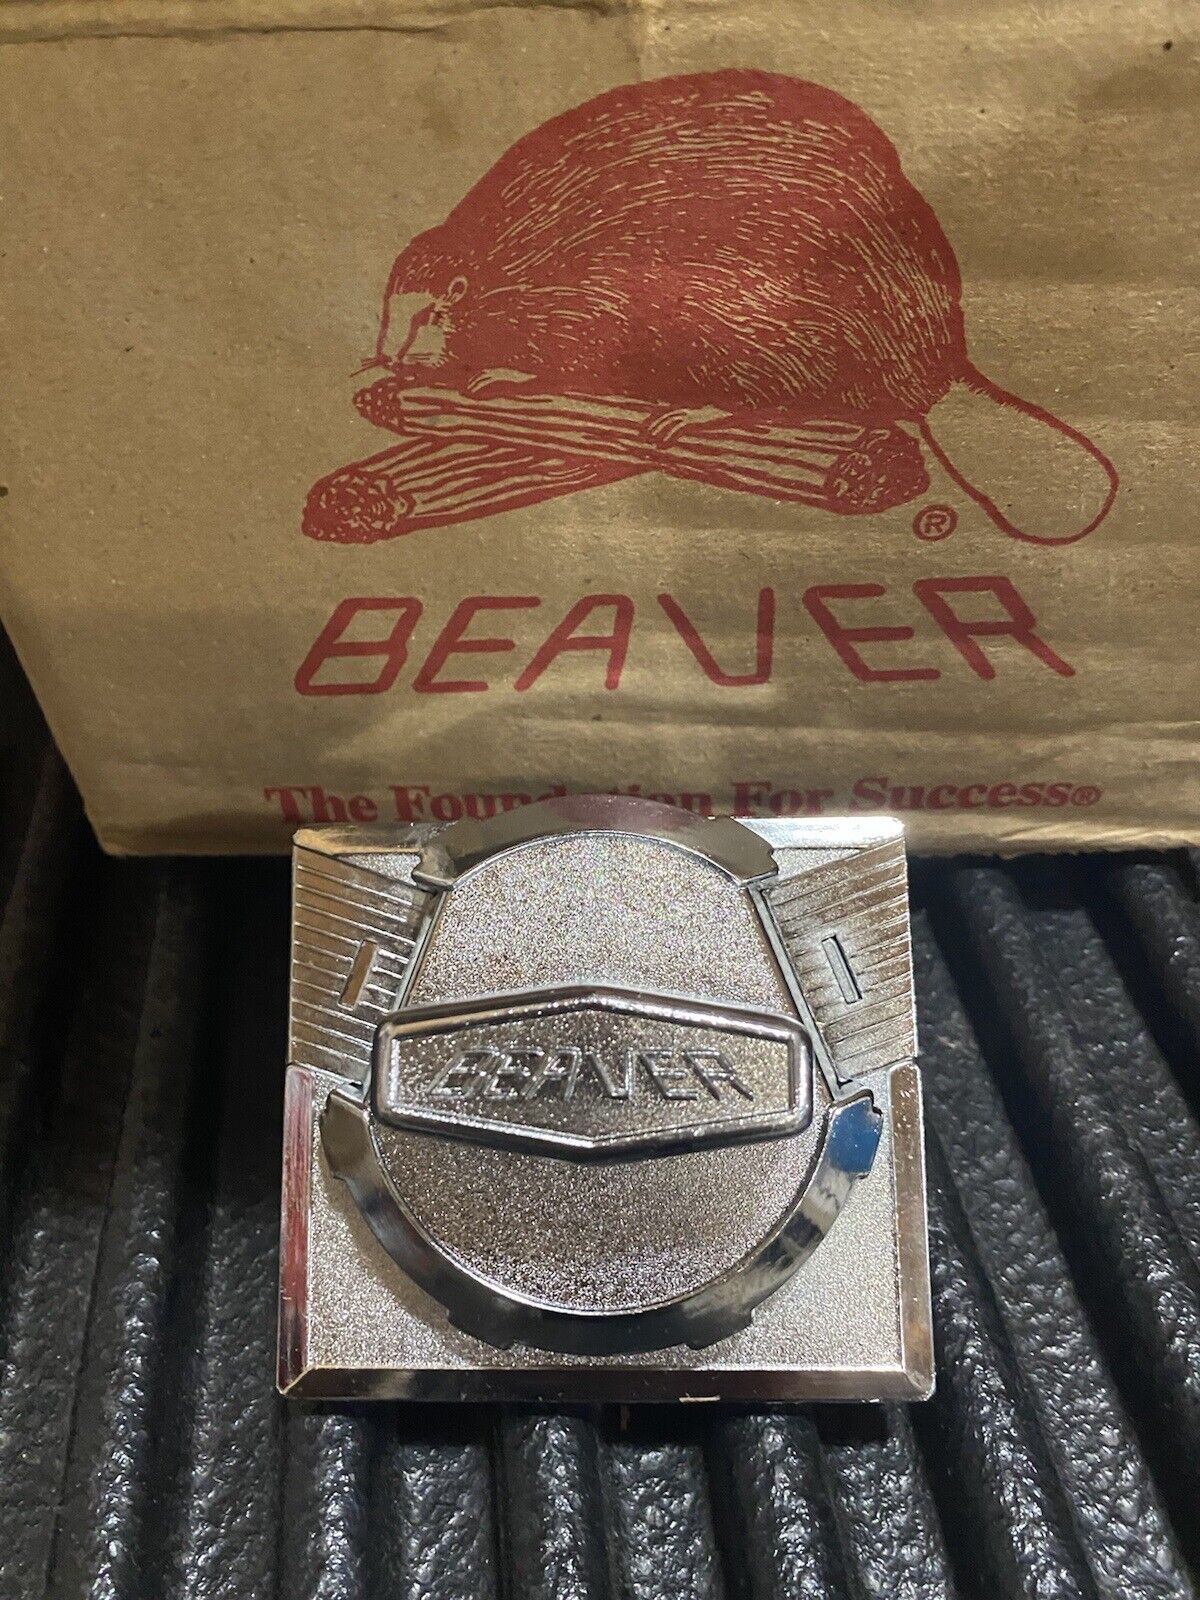 NEW 50 Cent Beaver RB16 Gumball Vending machine Coin Mech Mechanism 2 quarters